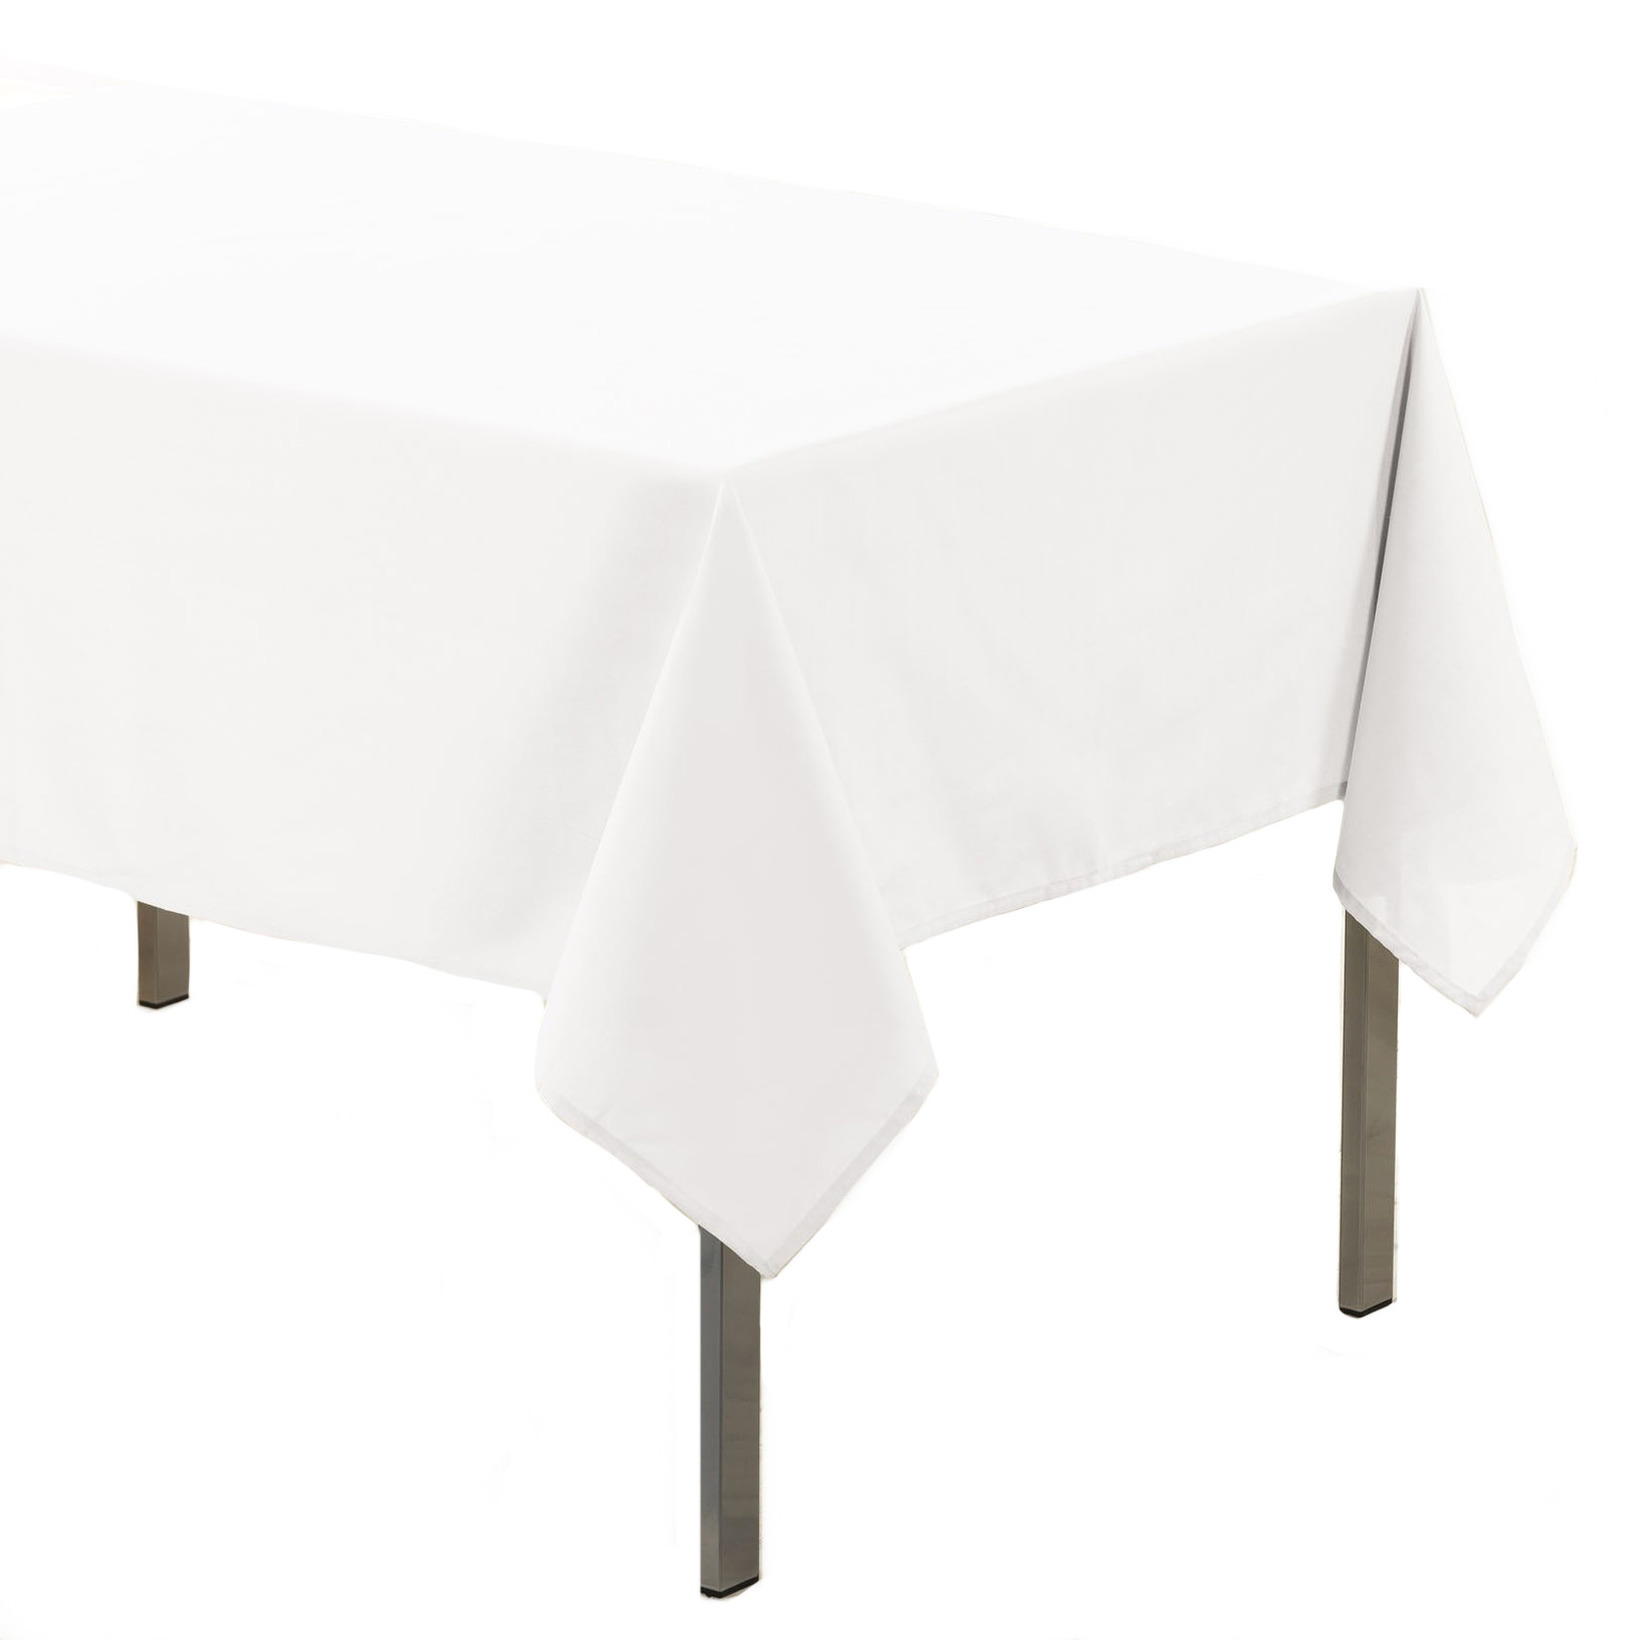 Tafelkleed/tafellaken wit x 250 cm textiel/stof bestellen voor € 18.99 bij Knuffelparadijs